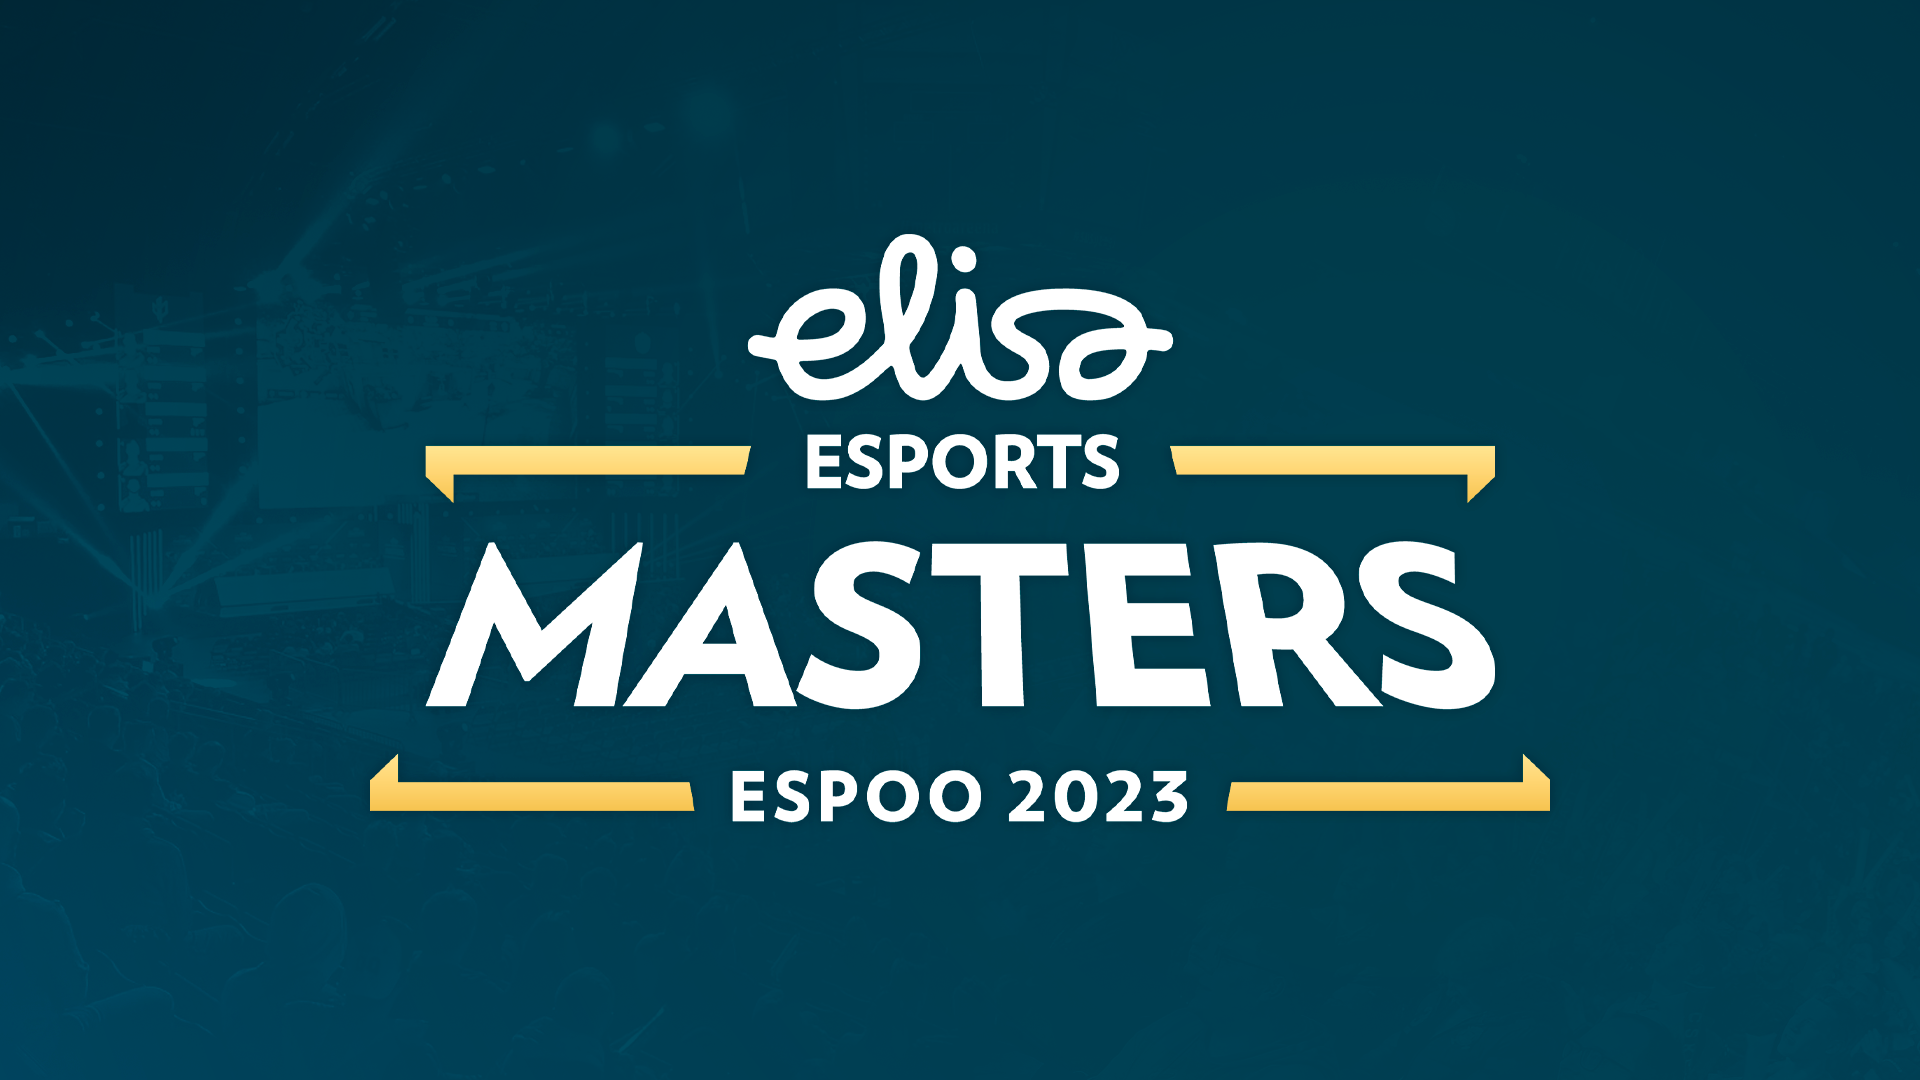 Apeks обыграла MOUZ в рамках групповой стадии на Elisa Masters Espoo 2023